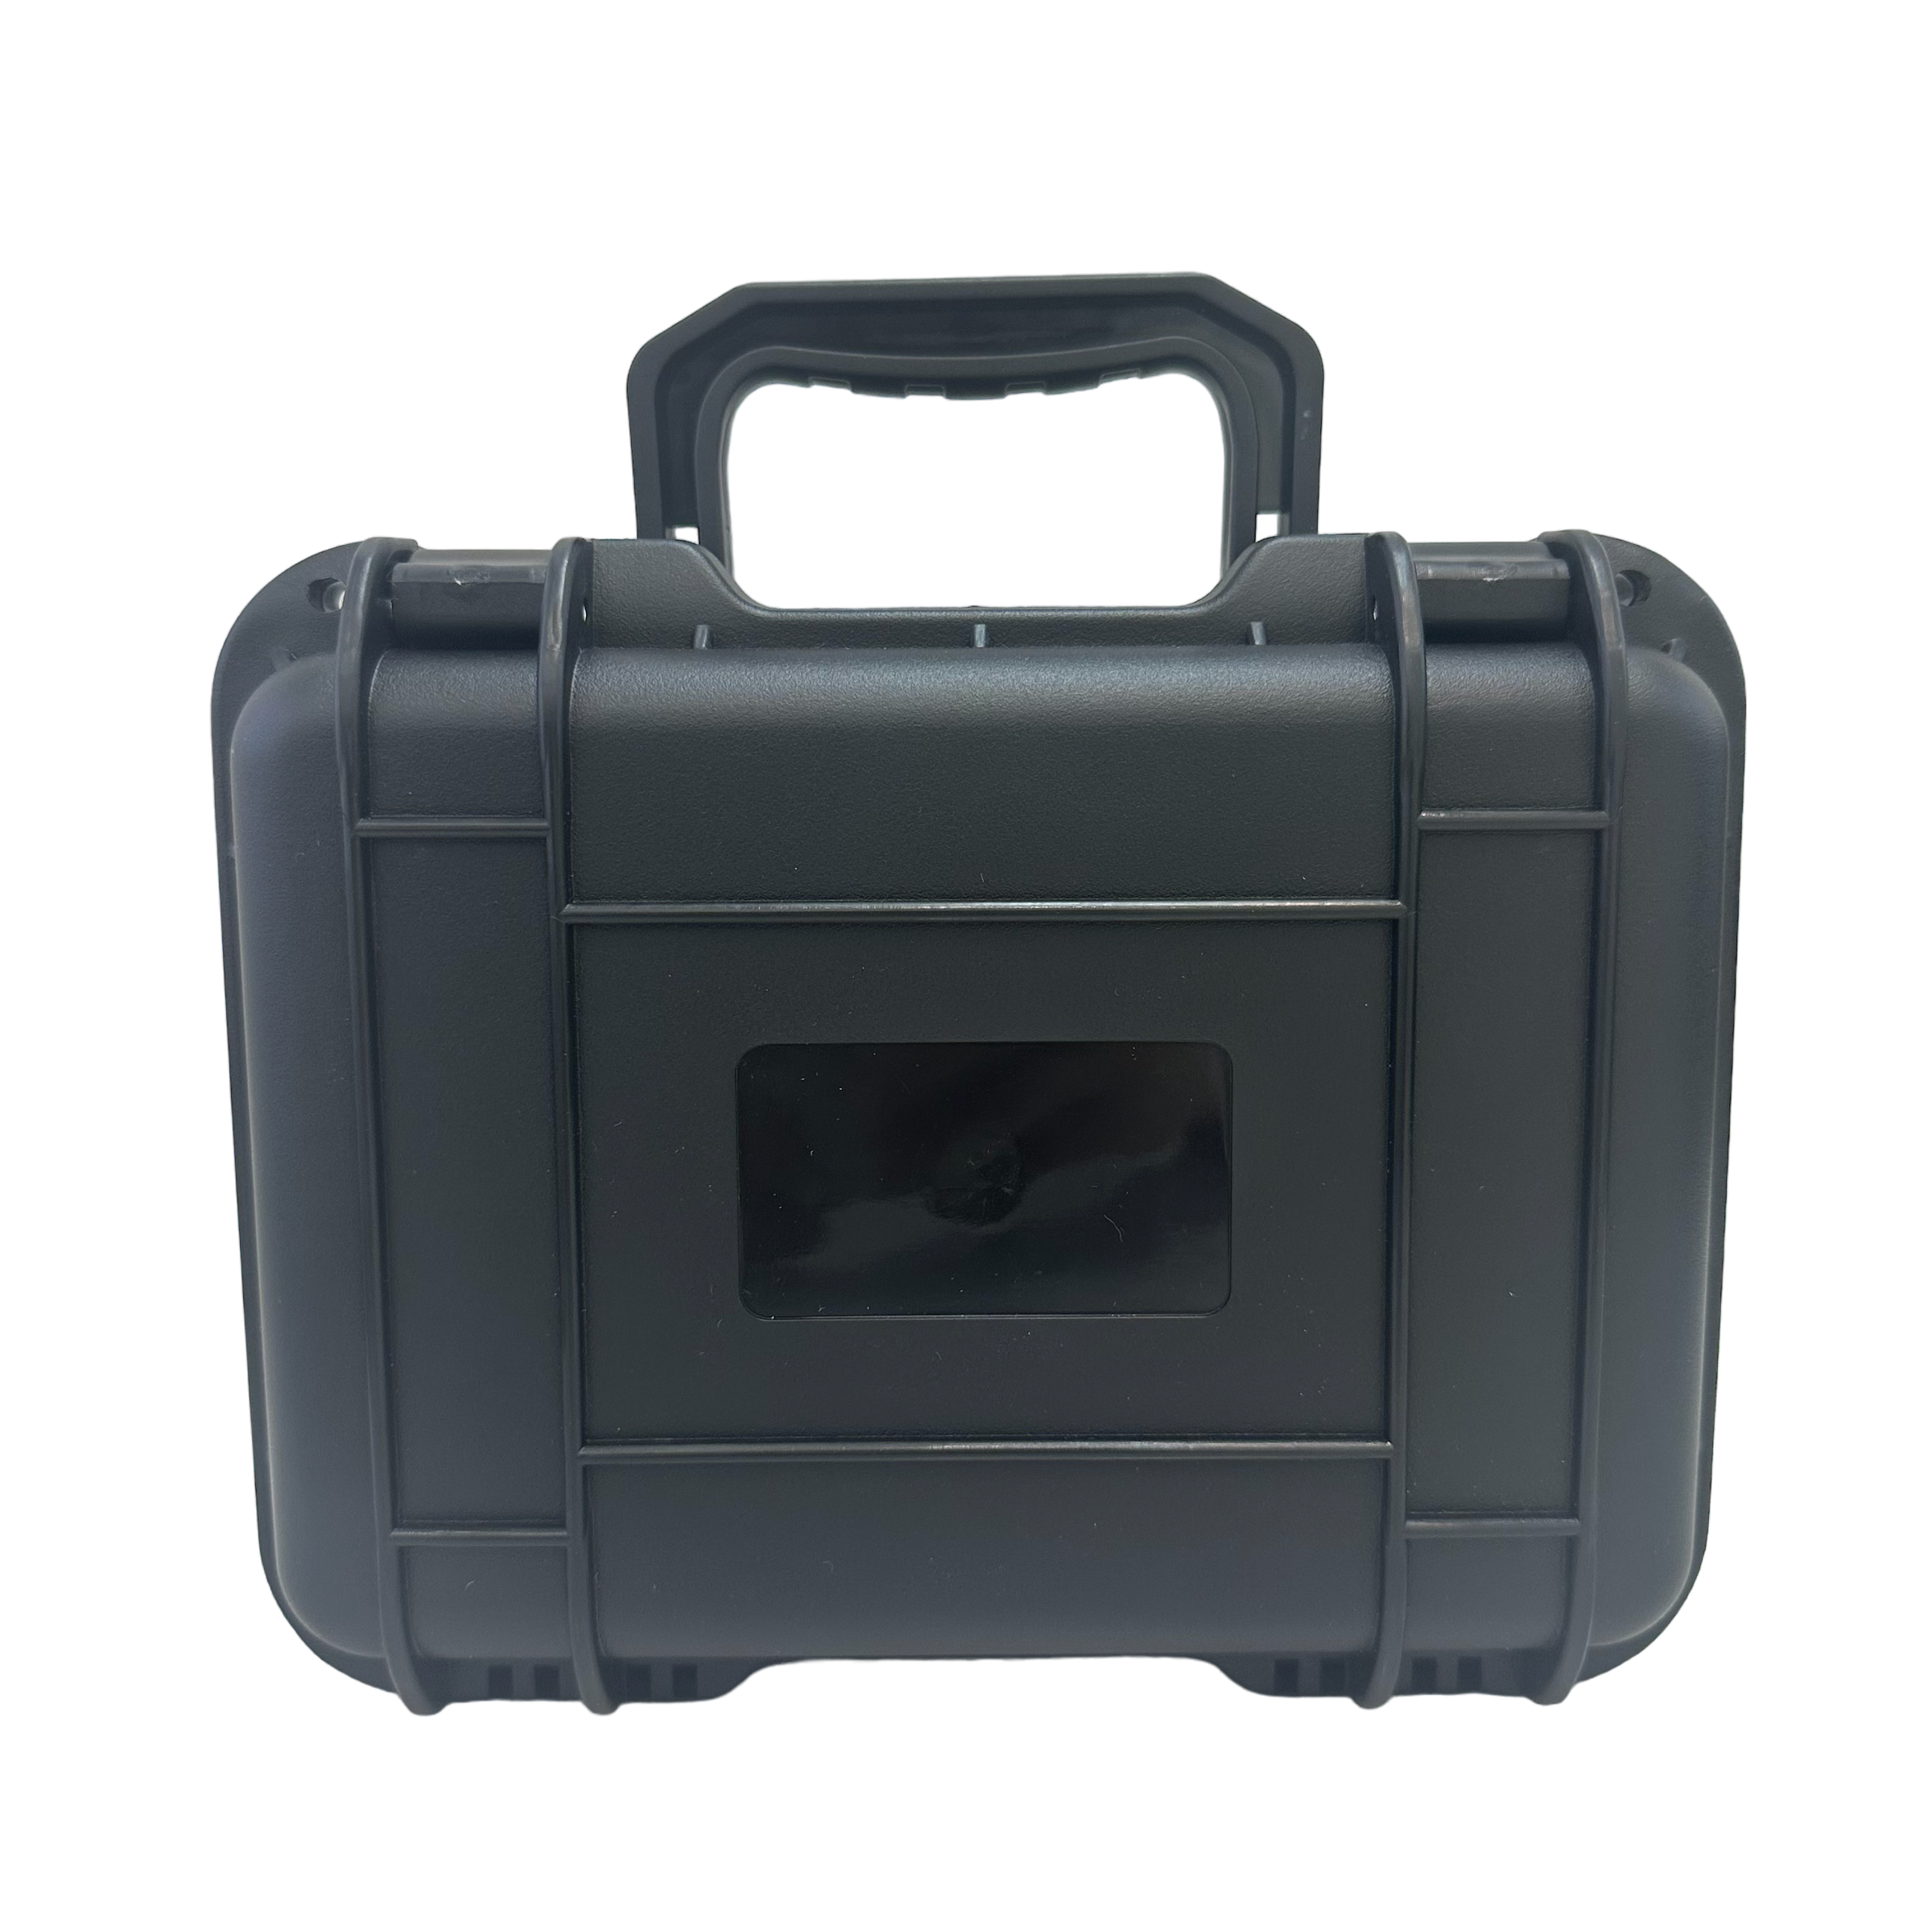 Watch Box Case Plastic Waterproof 3 Slot